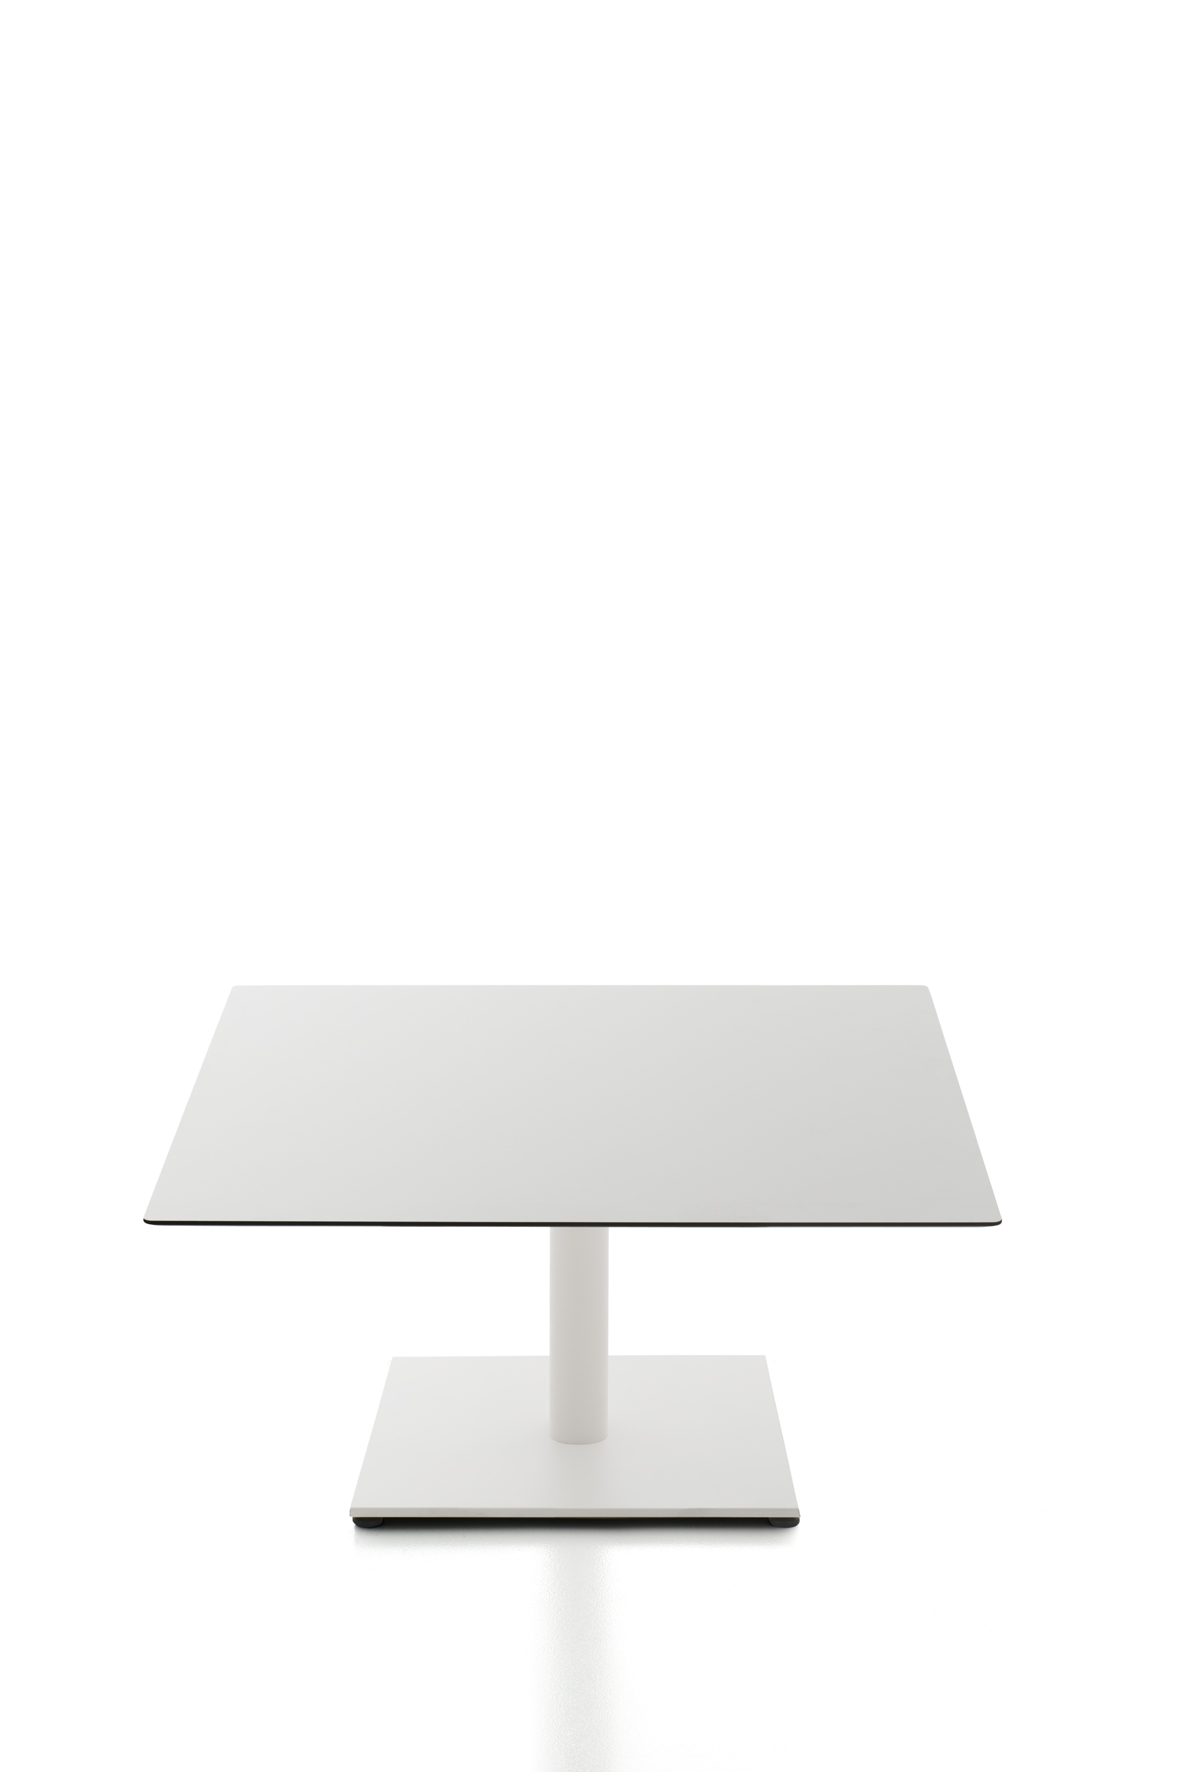 Tisch Kaleox, Basisversion; <br>quadratische Tischplatte 80 x 80 cm, wei; <br>Gestell wei lackiert; Tischhhe 40 cm